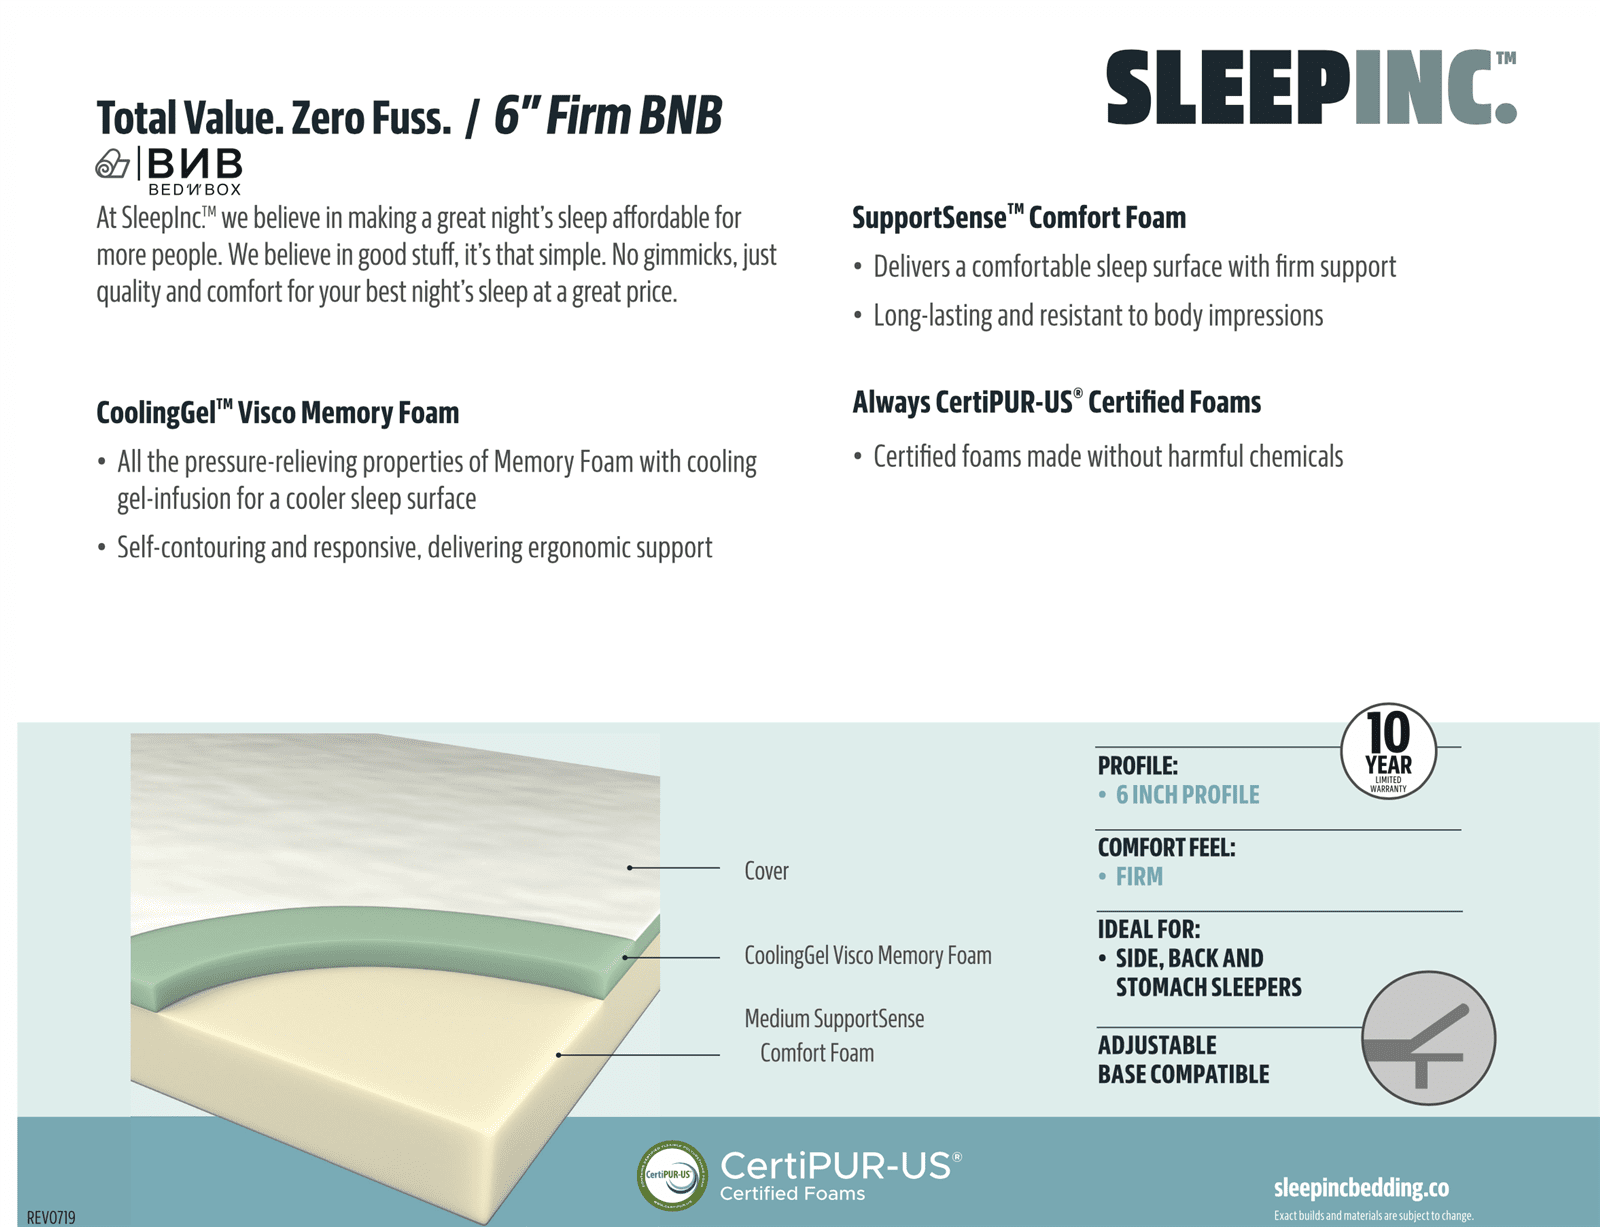 Sleep Inc S20406 6" Firm Gel Memory Foam Mattress